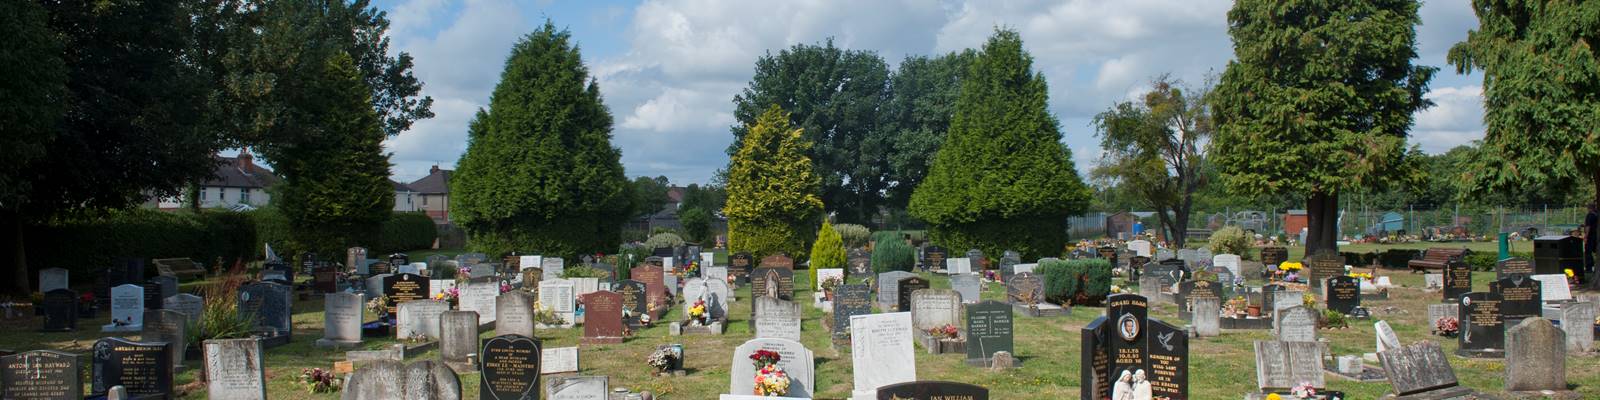 Eastleigh_Brookwood_Cemetery13.jpg